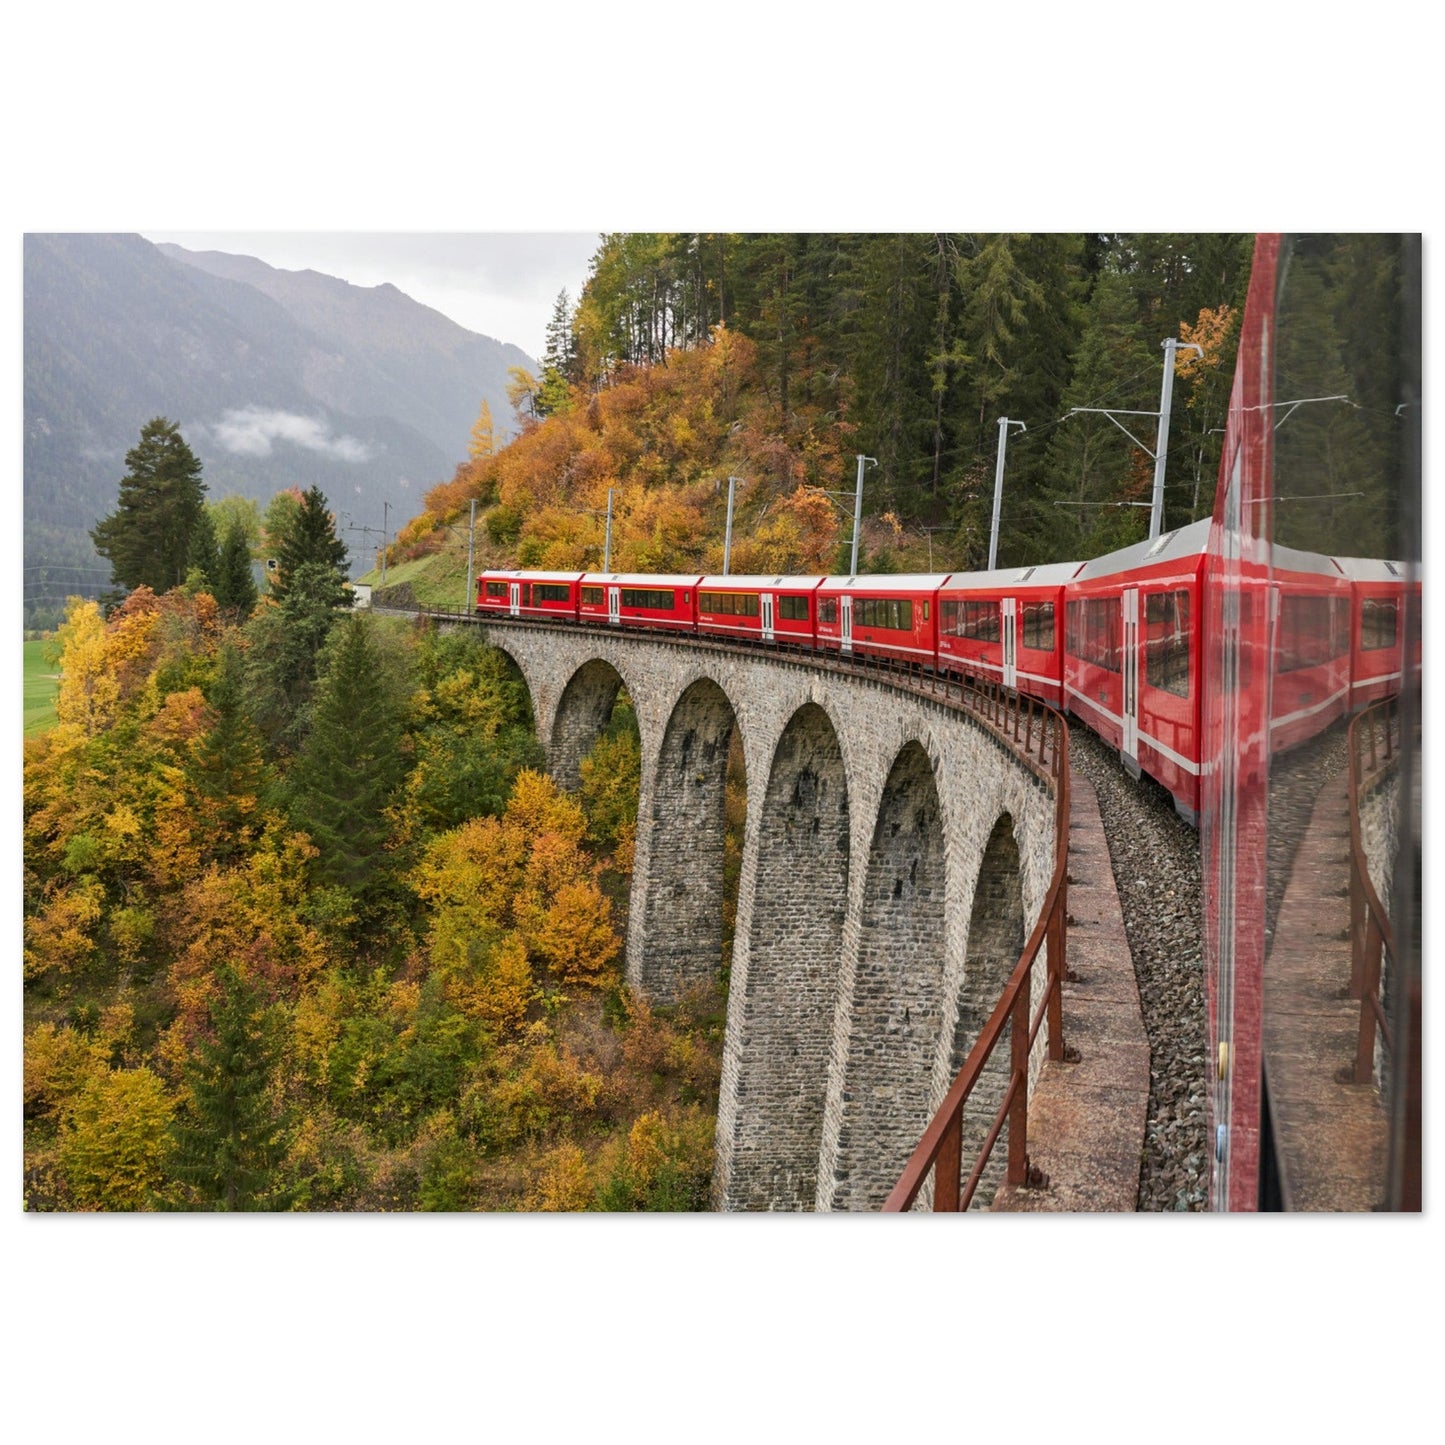 Vente Photo d'un train sur le Viaduc de Landwasser, Suisse #5 - Tableau photo paysage